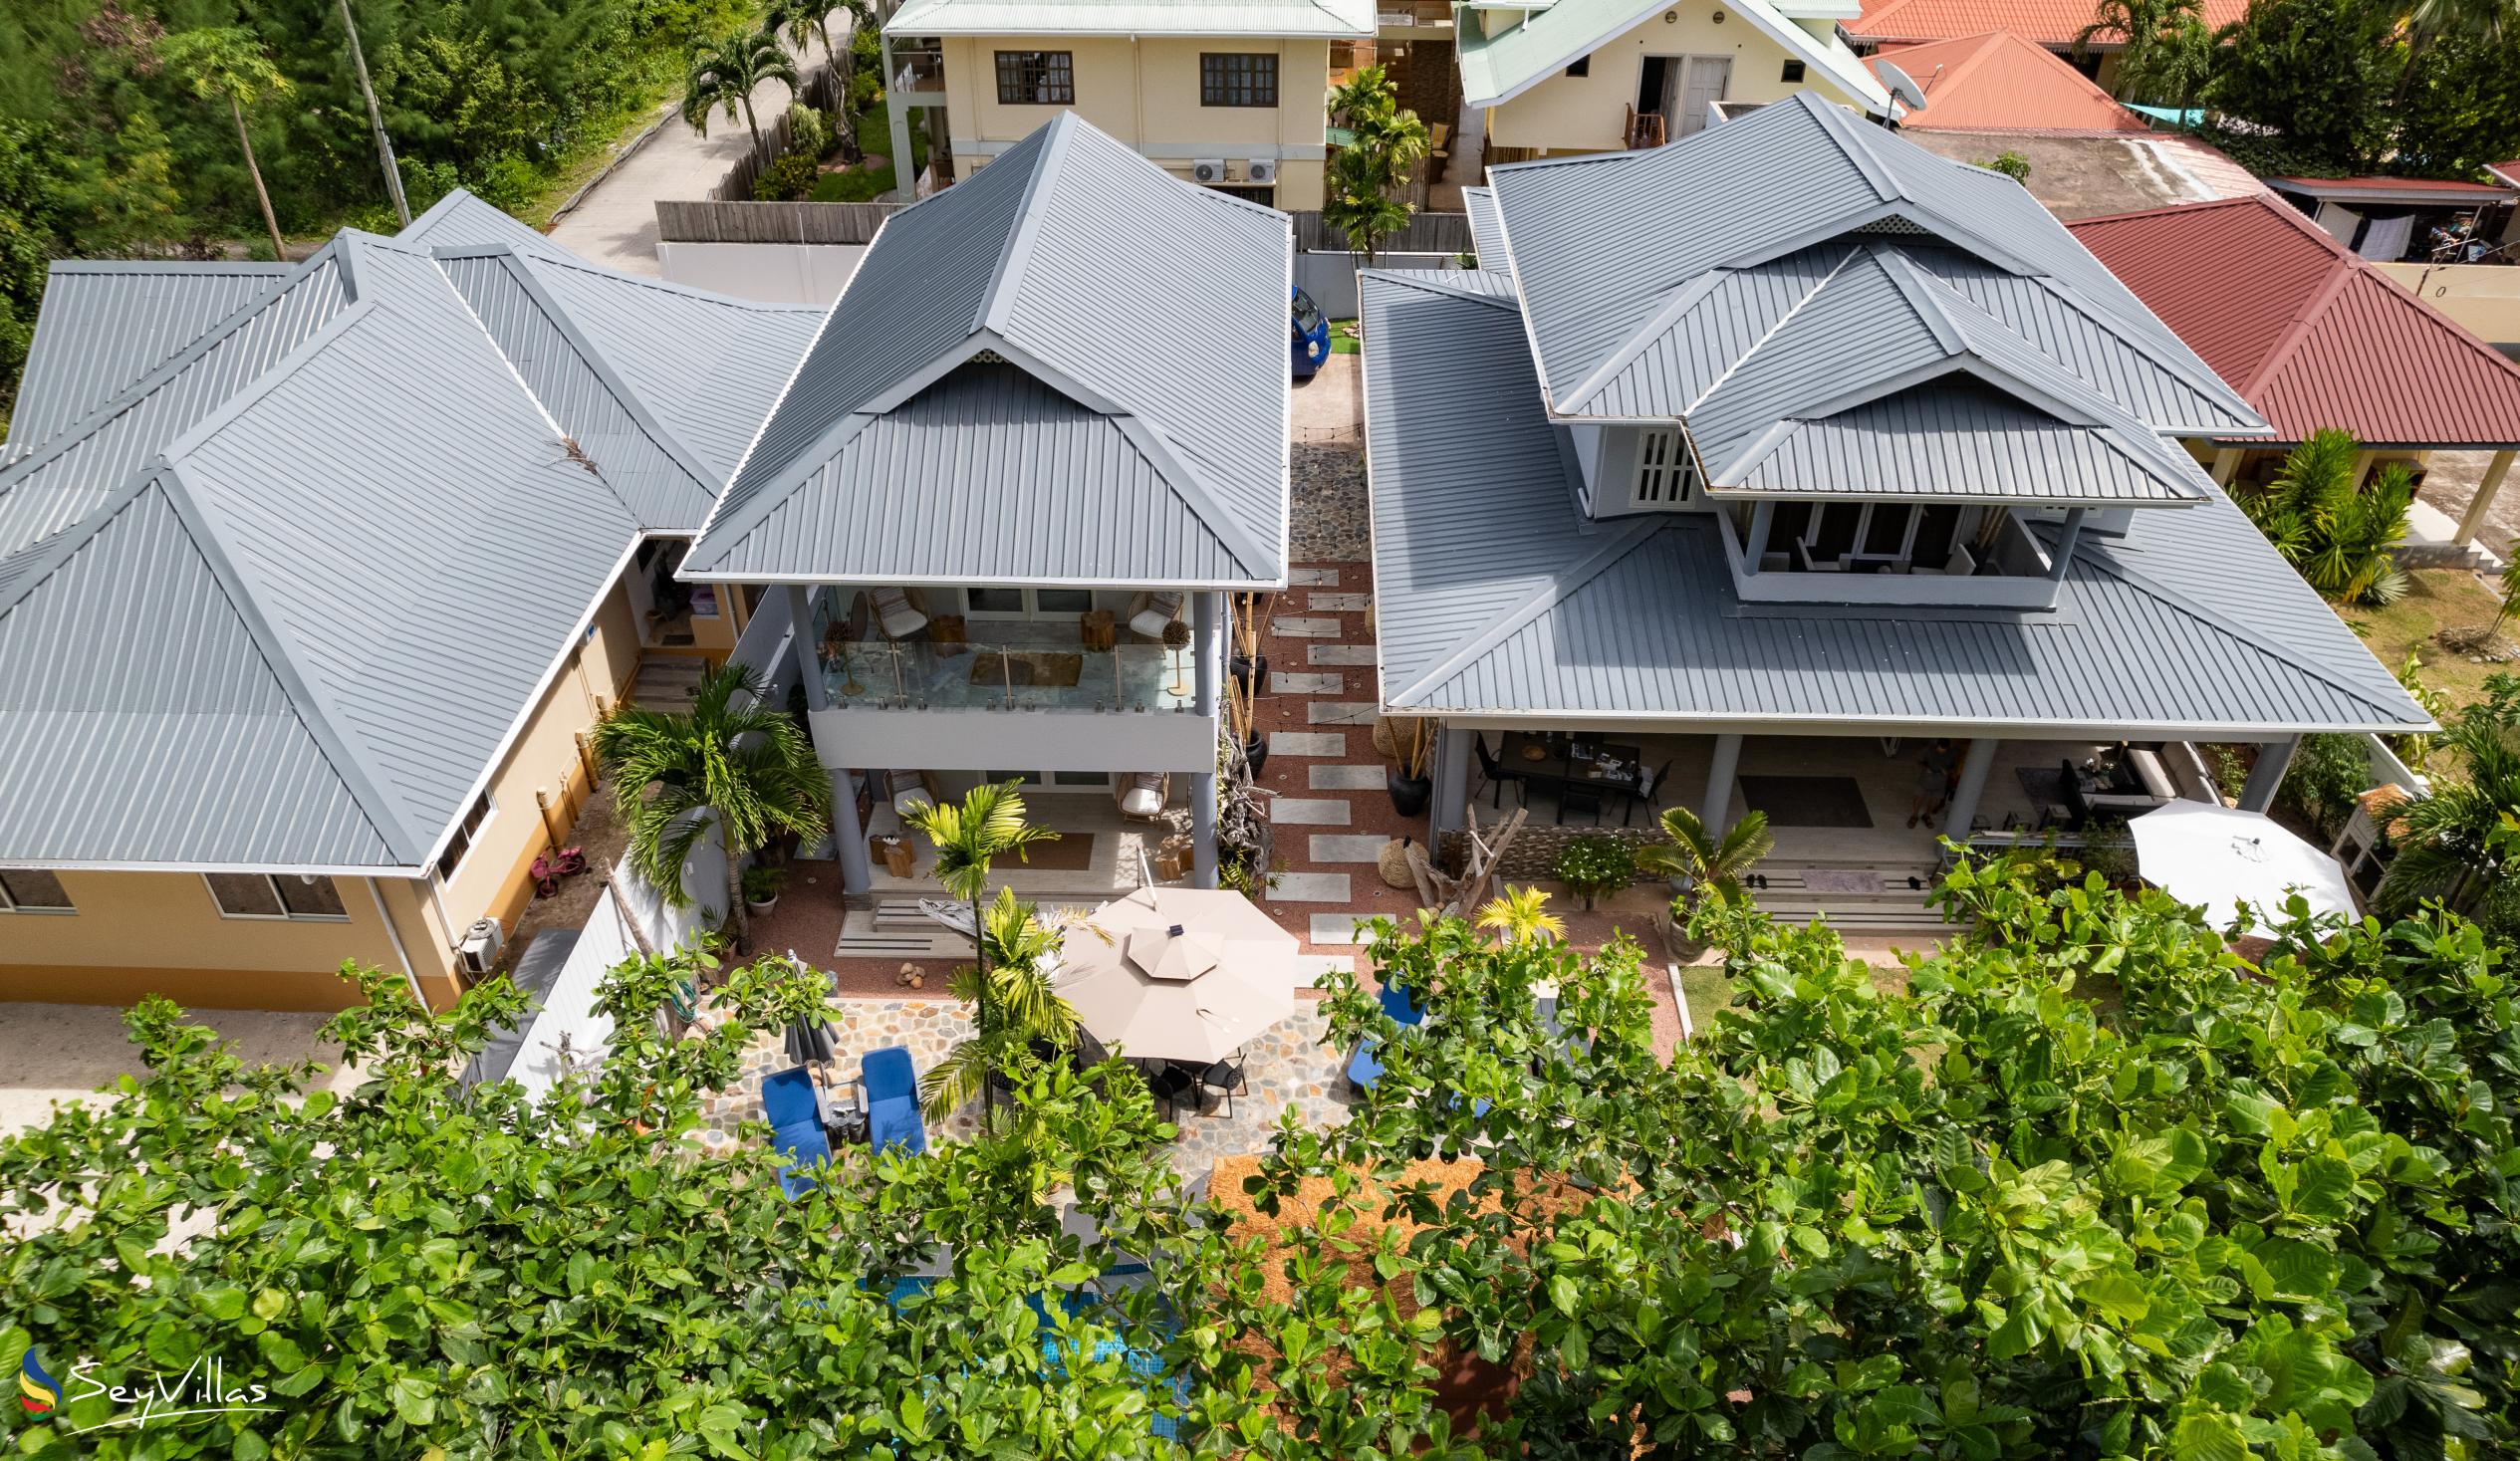 Foto 17: Treasure Villa - Aussenbereich - Praslin (Seychellen)